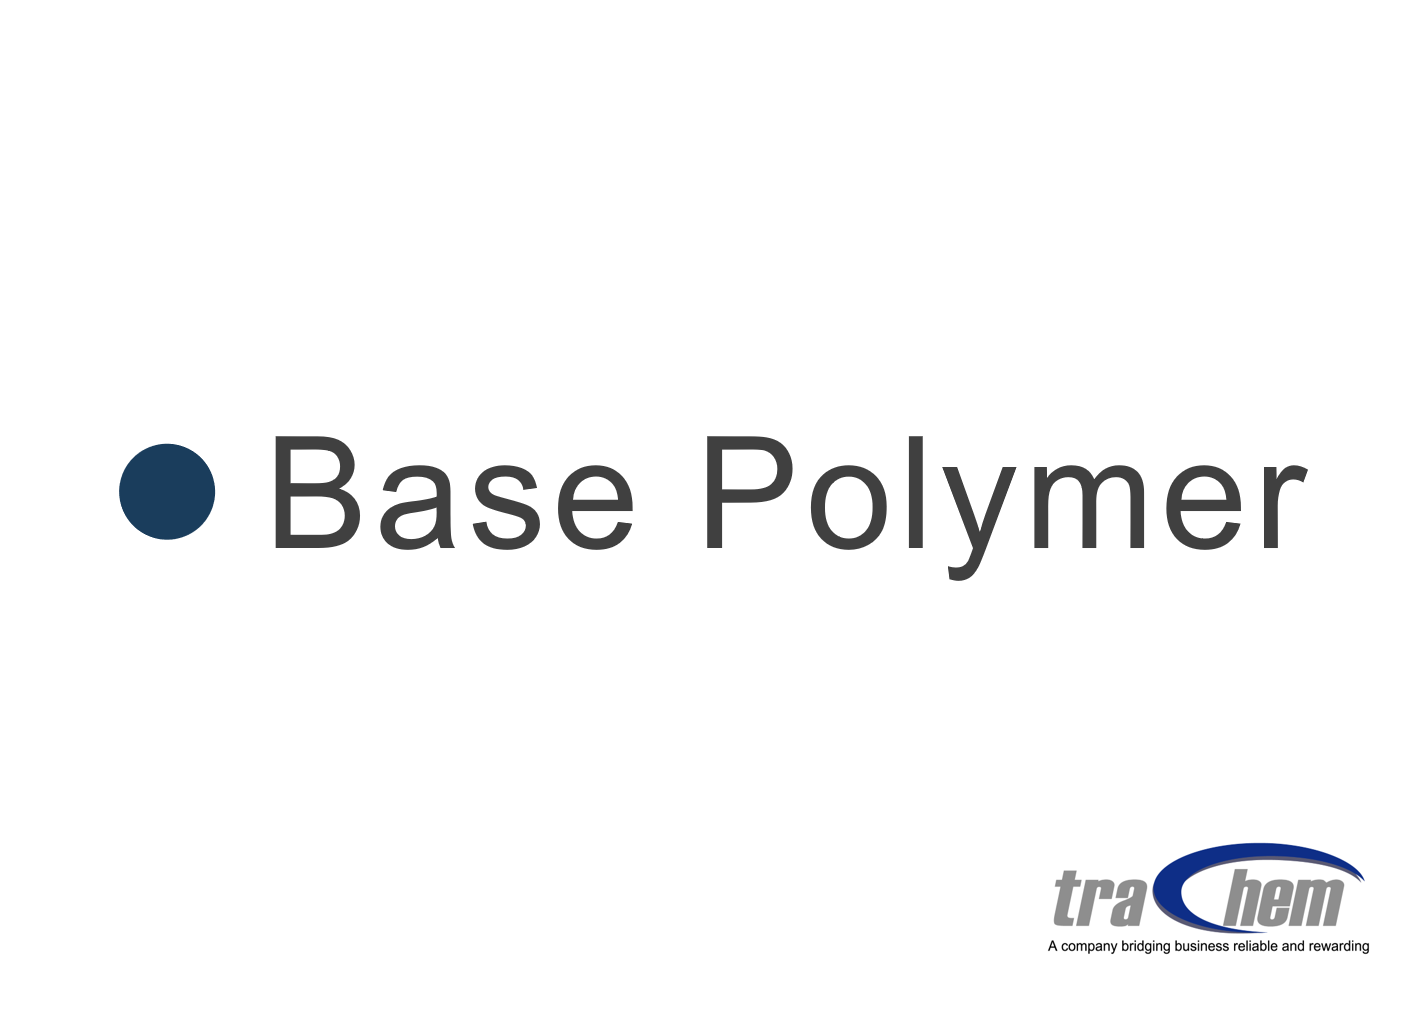 Base polymer